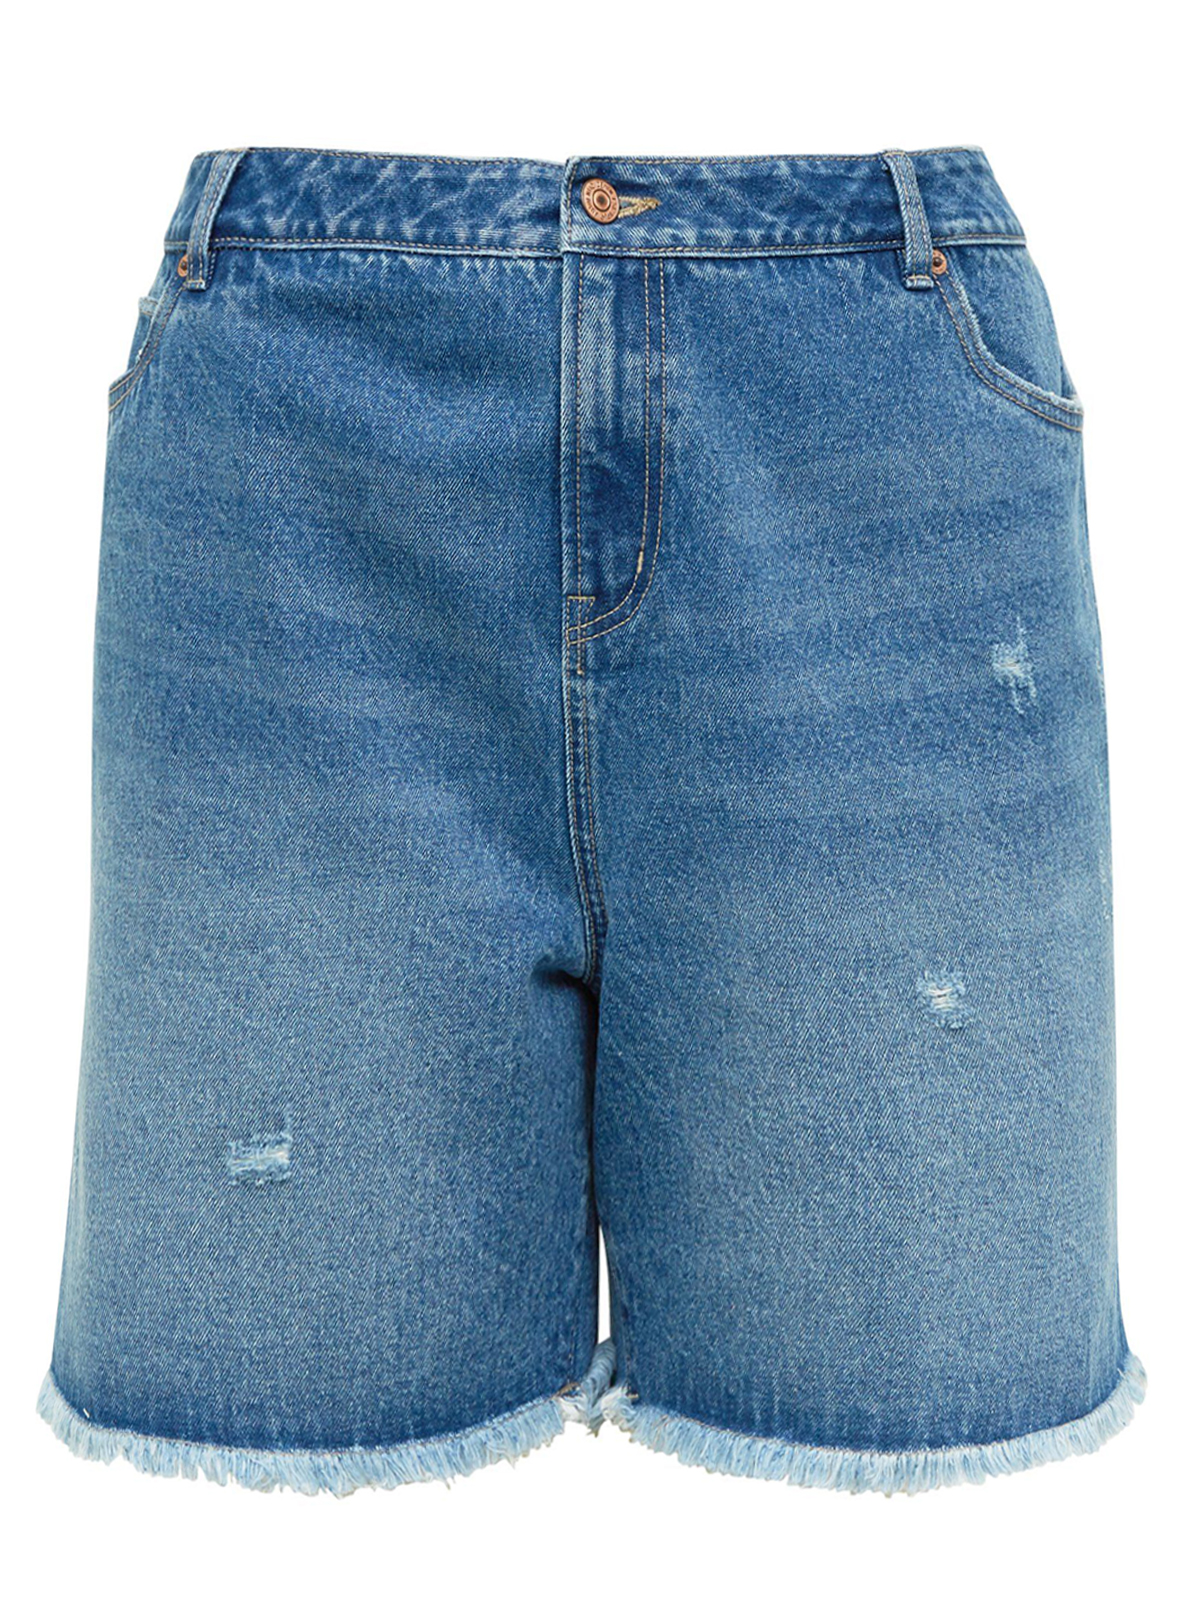 N3W L00K DENIM Frayed Hem Denim Shorts - Plus Size 18 to 28